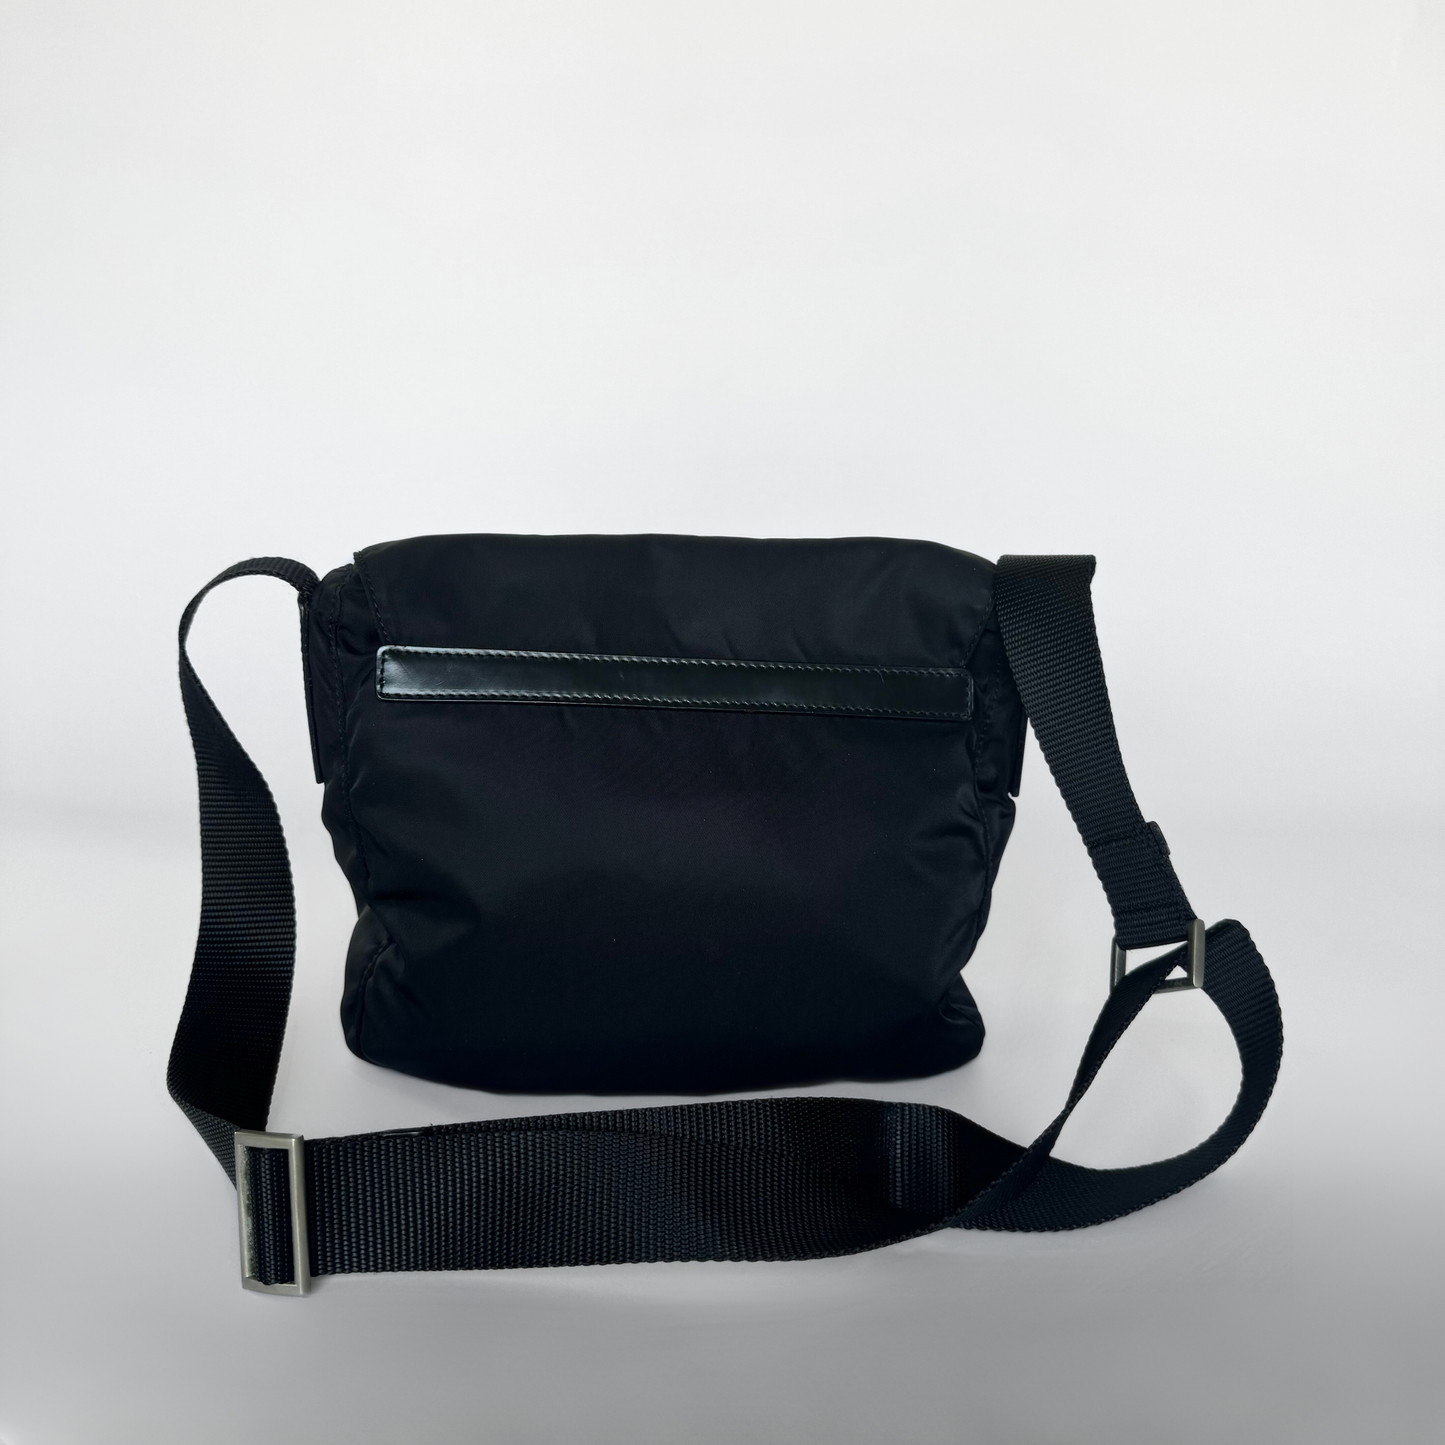 Prada Prada Crossbody Bag Nylon - Crossbody vesker - Etoile Luxury Vintage